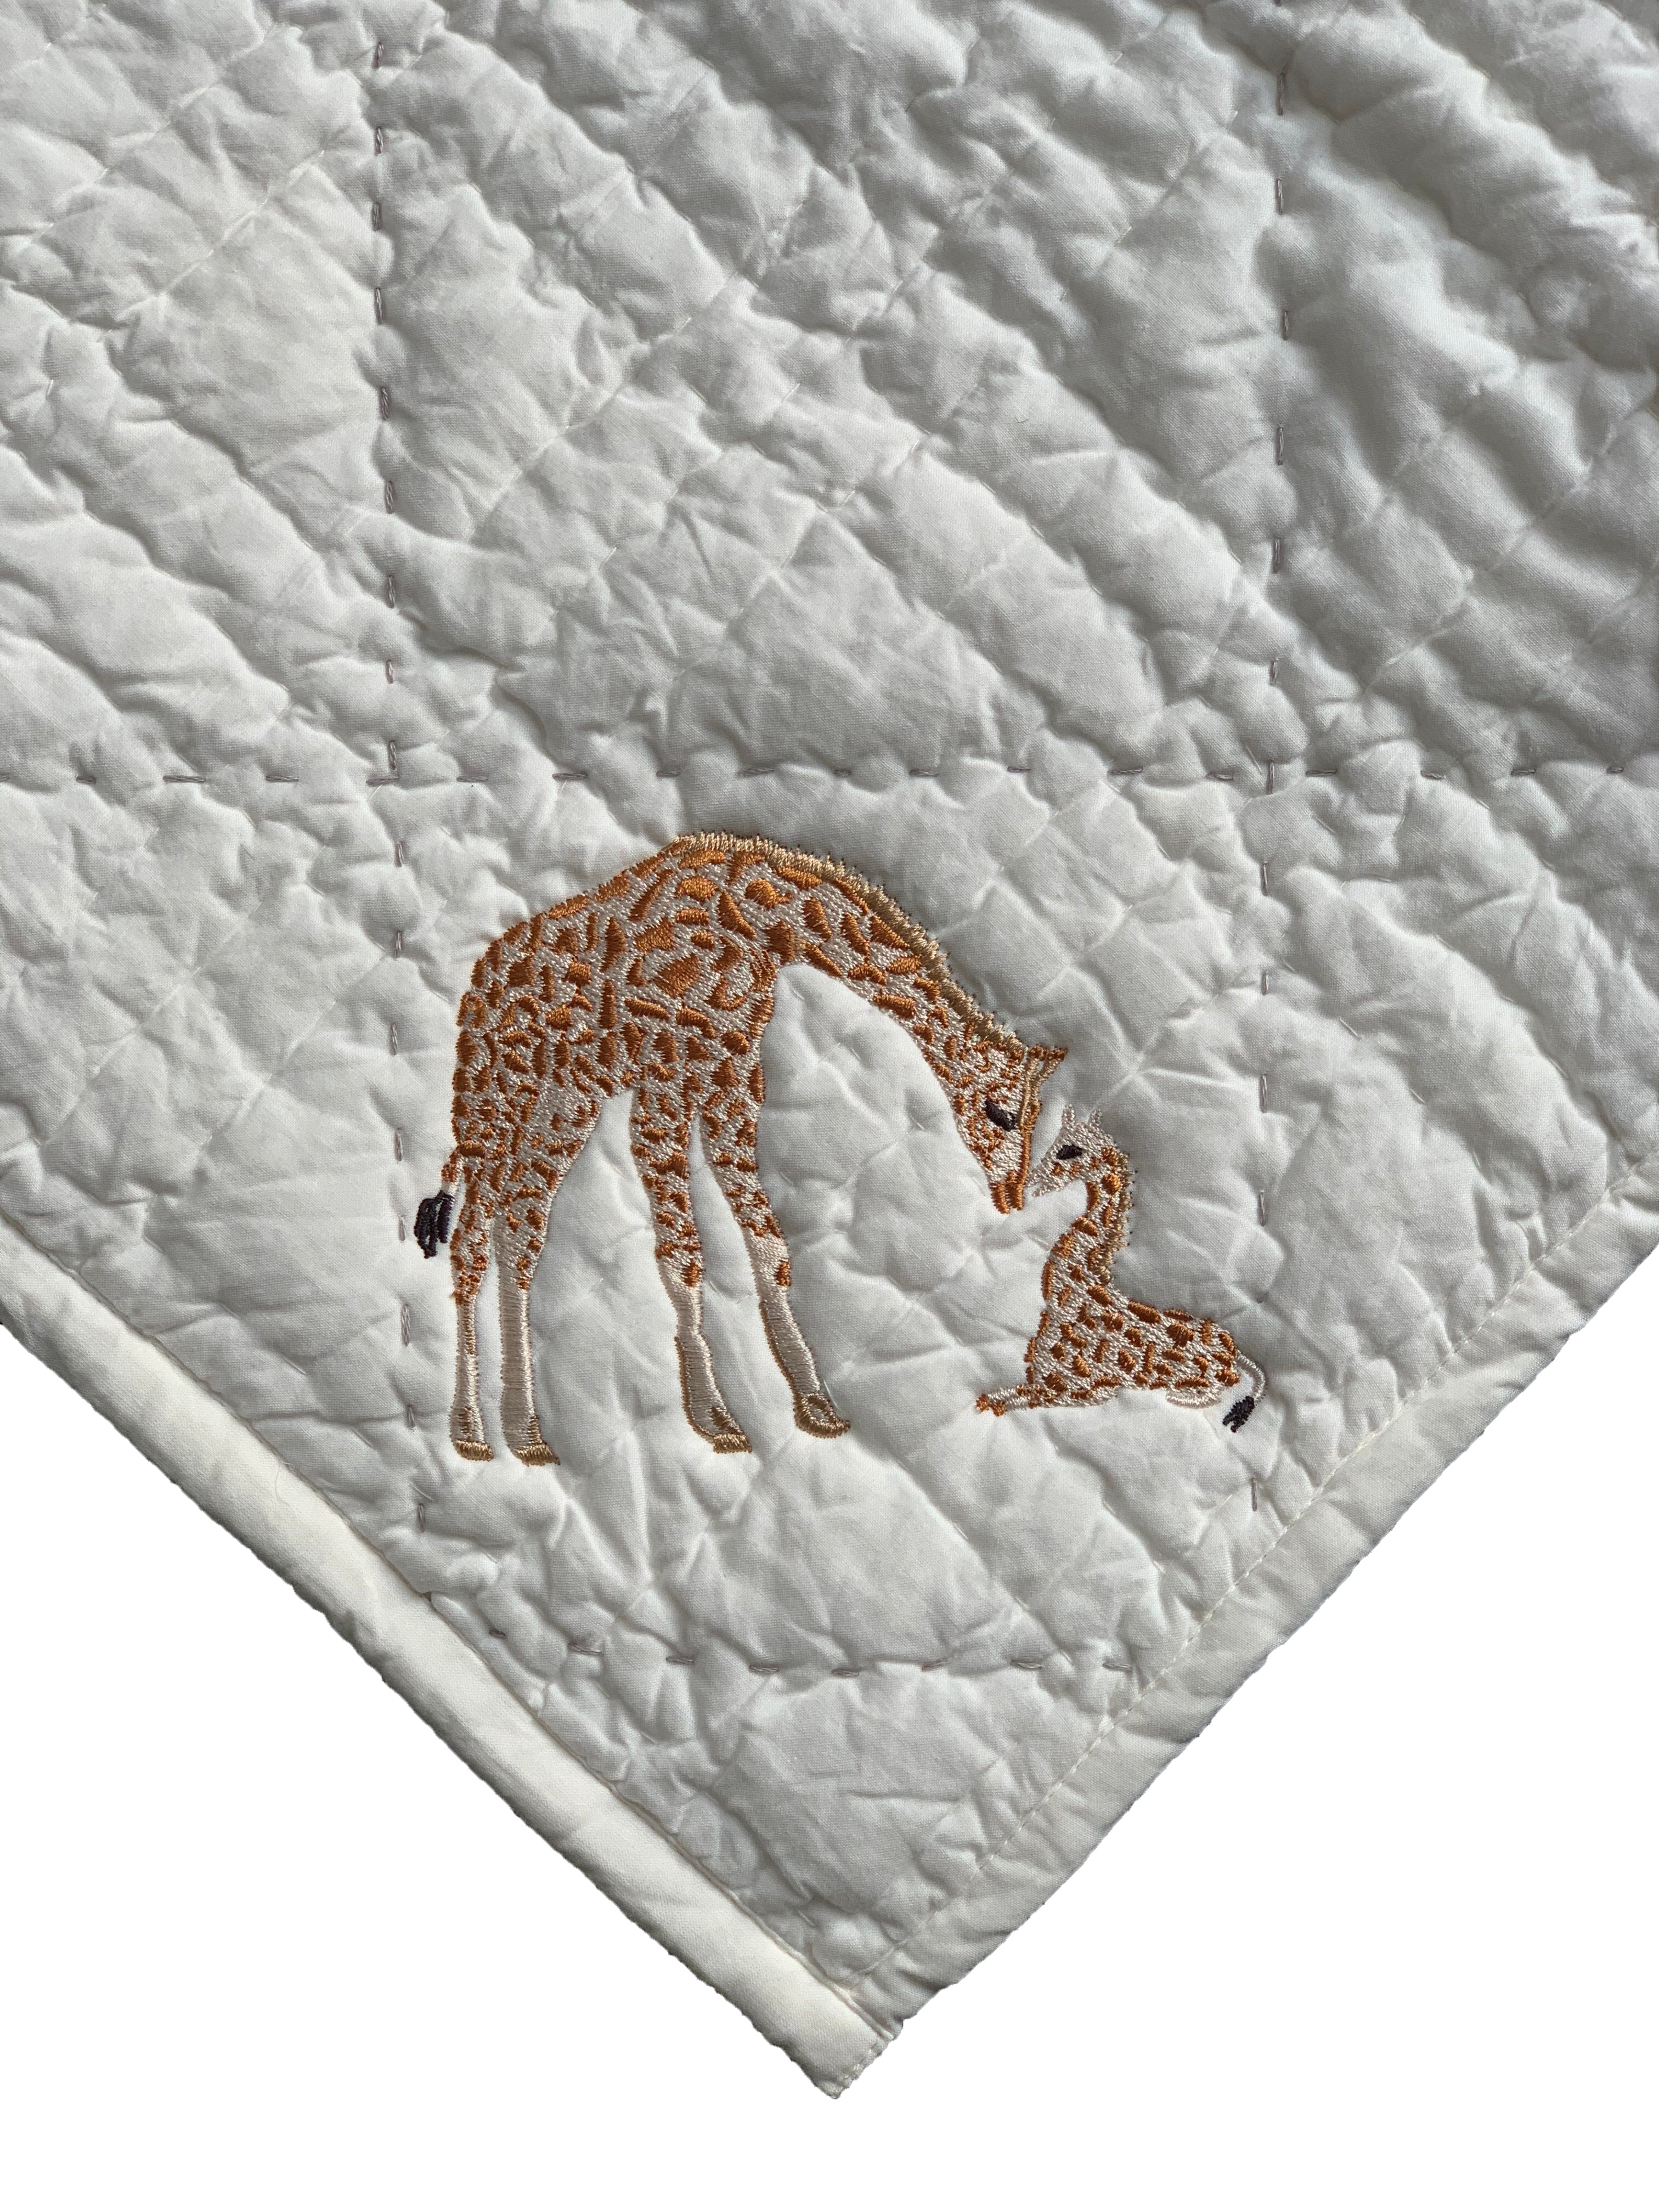 Giraffe Baby Blanket